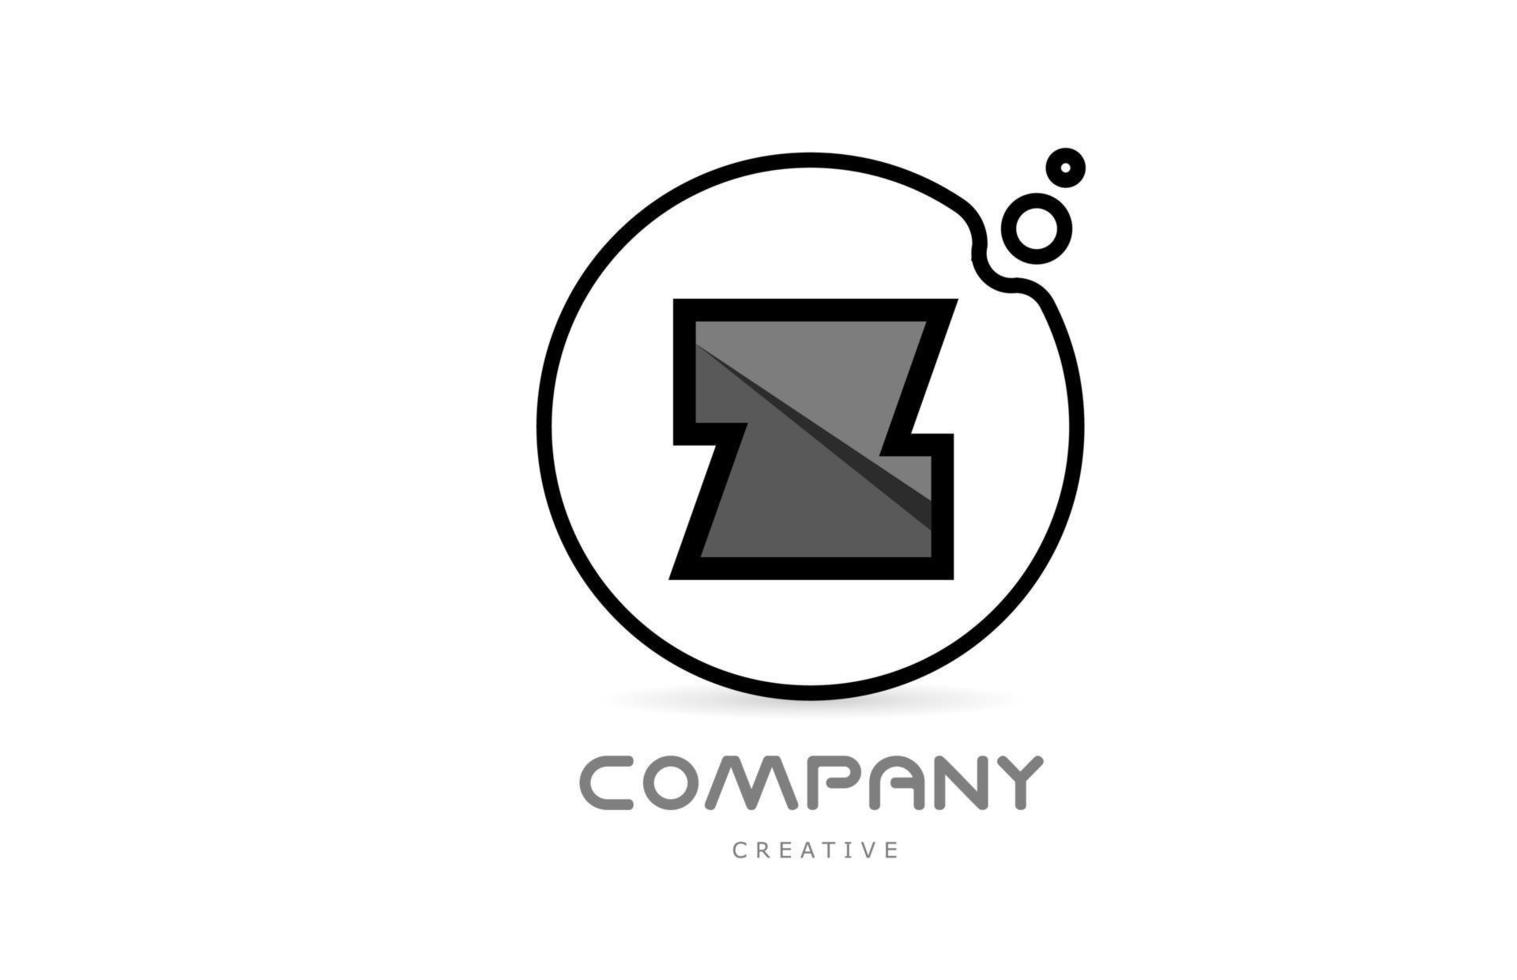 z icono de logotipo de letra del alfabeto geométrico en blanco y negro con círculo. plantilla creativa para empresa y negocio vector